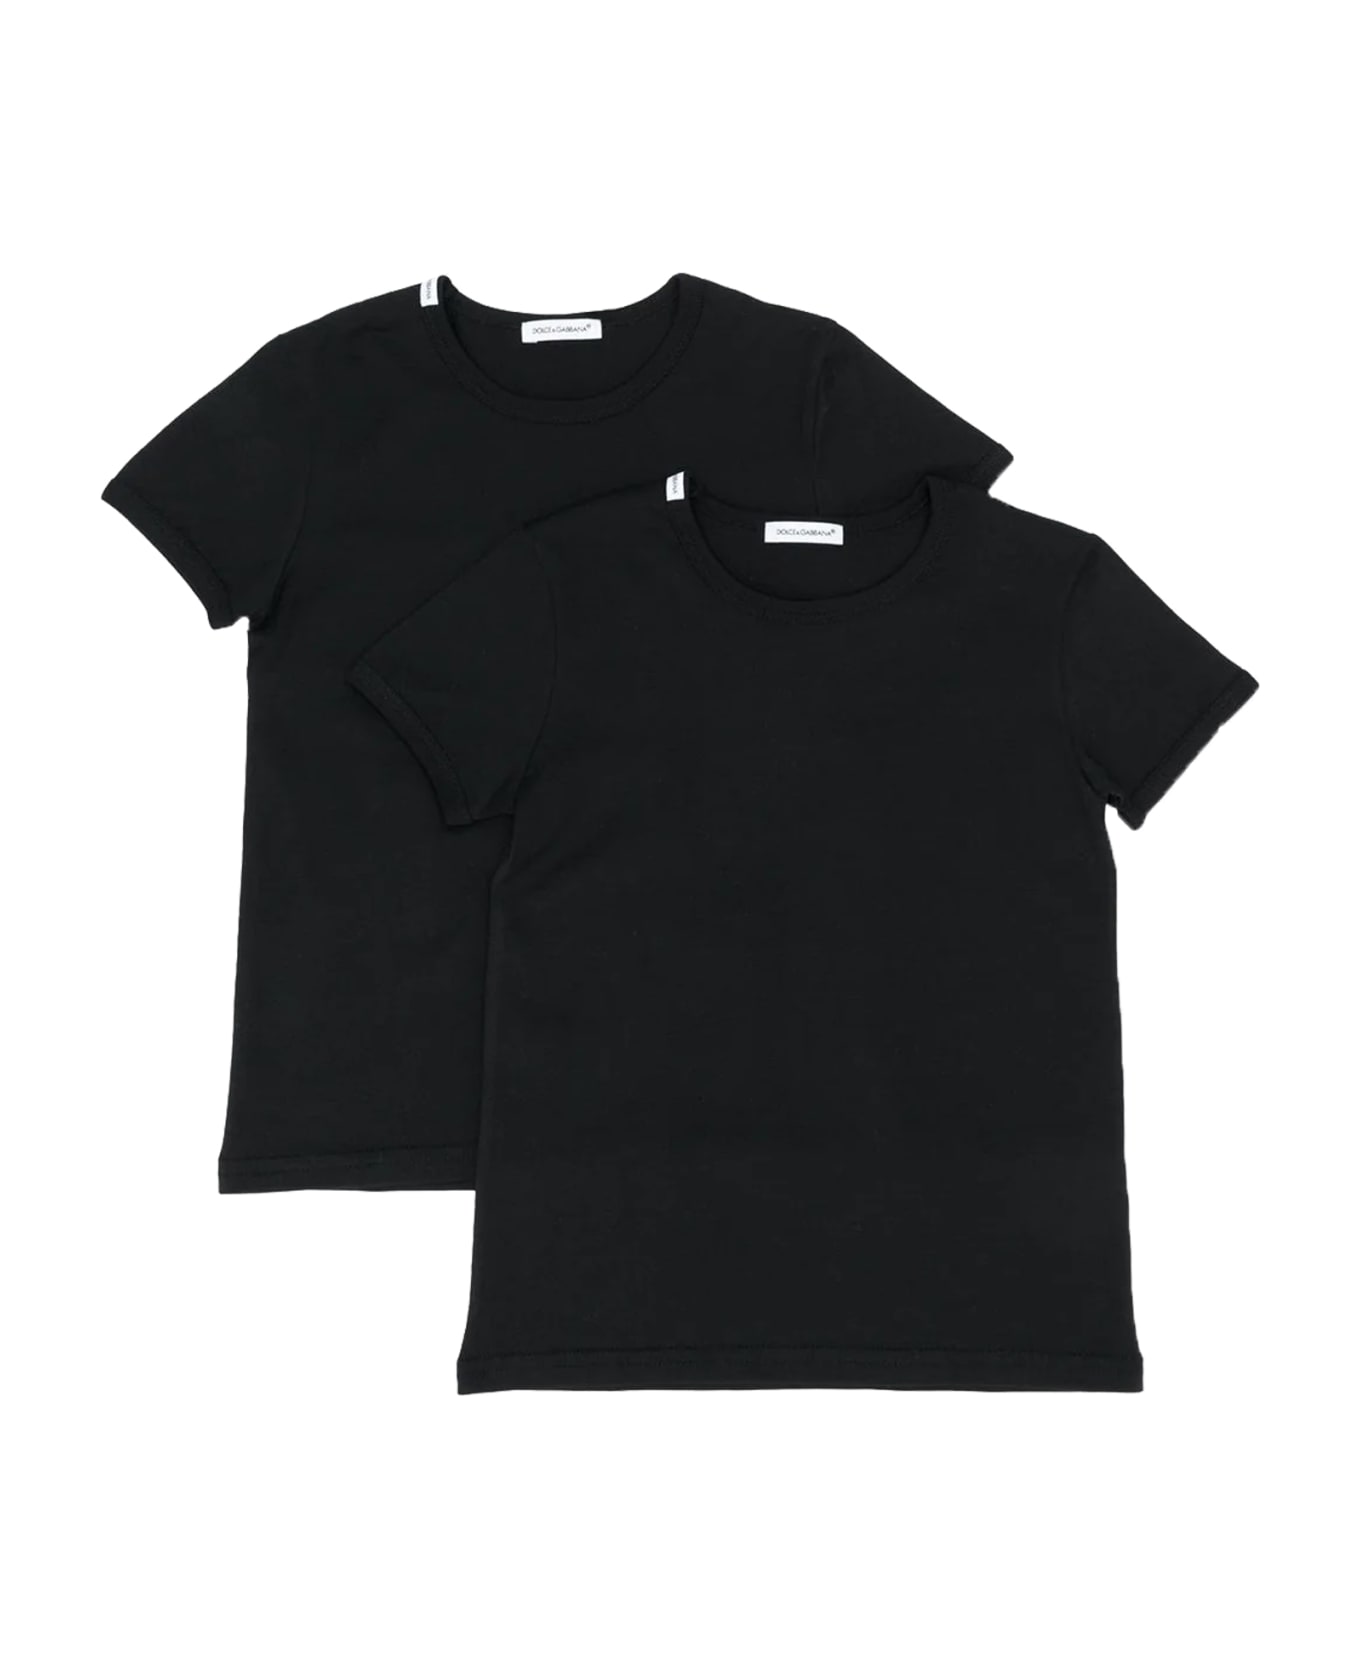 Dolce & Gabbana T-shirt Kit - Back